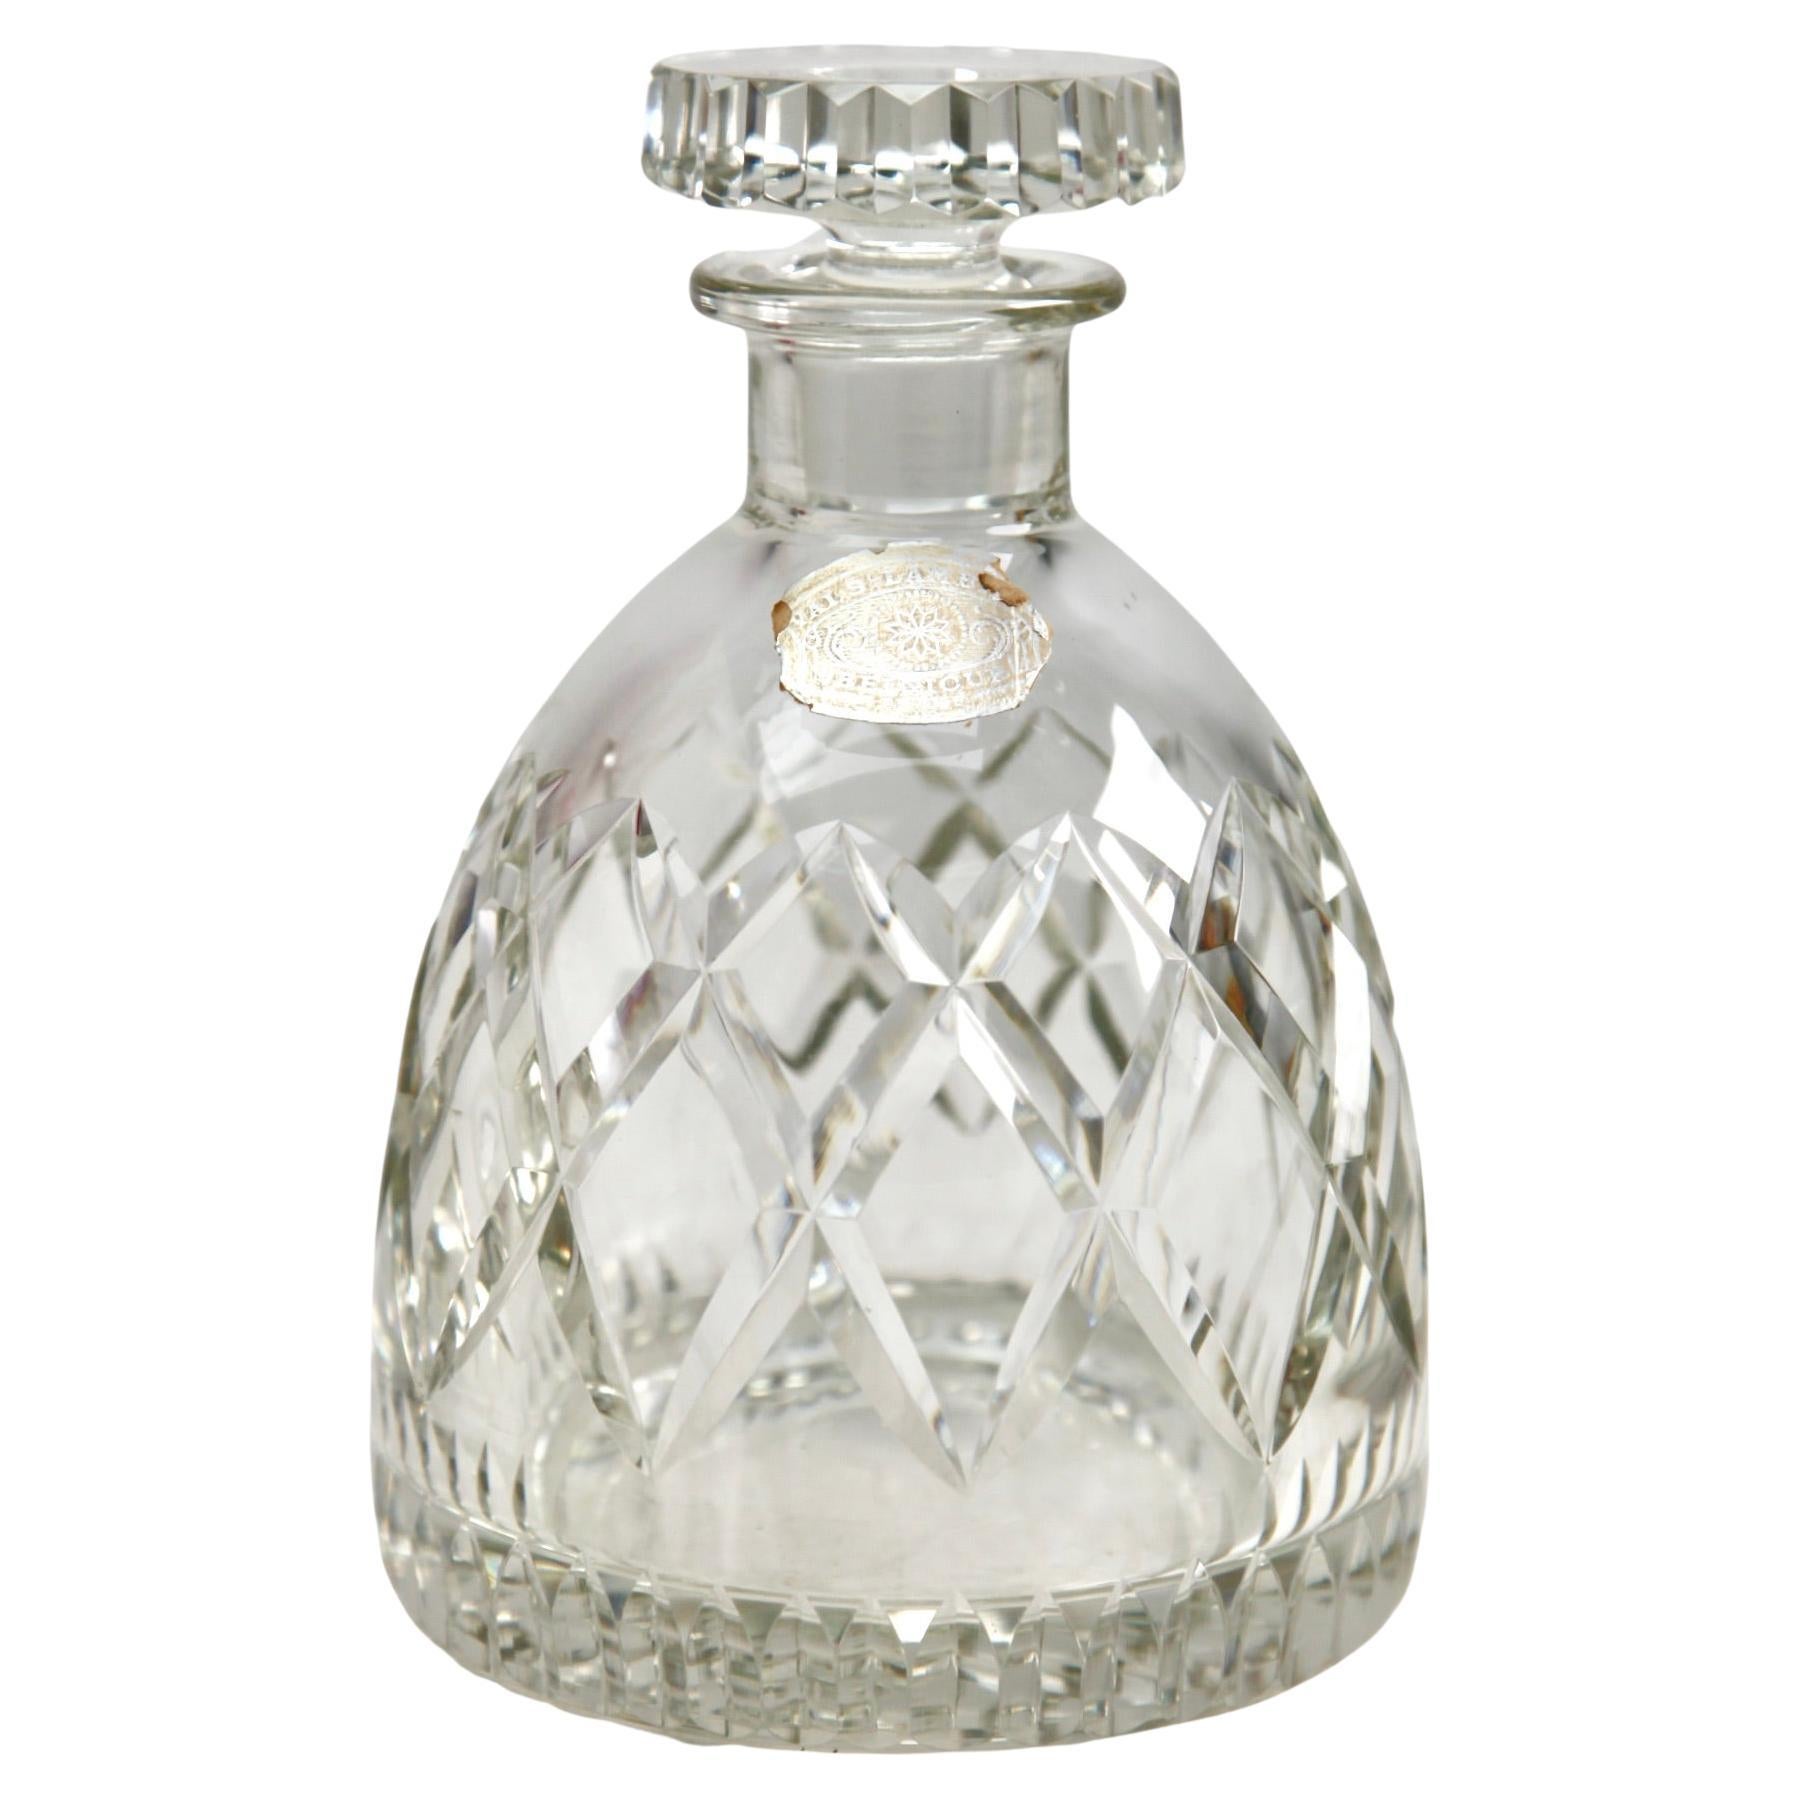 Val Saint Lambert Karaffe aus geschliffenem Kristall, 20. Jahrhundert
Sieht einfach umwerfend aus.
Val Saint Lambert ist ein belgischer Hersteller von Kristallglaswaren, der 1826 gegründet wurde und seinen Sitz in Seraing hat. Sie ist der